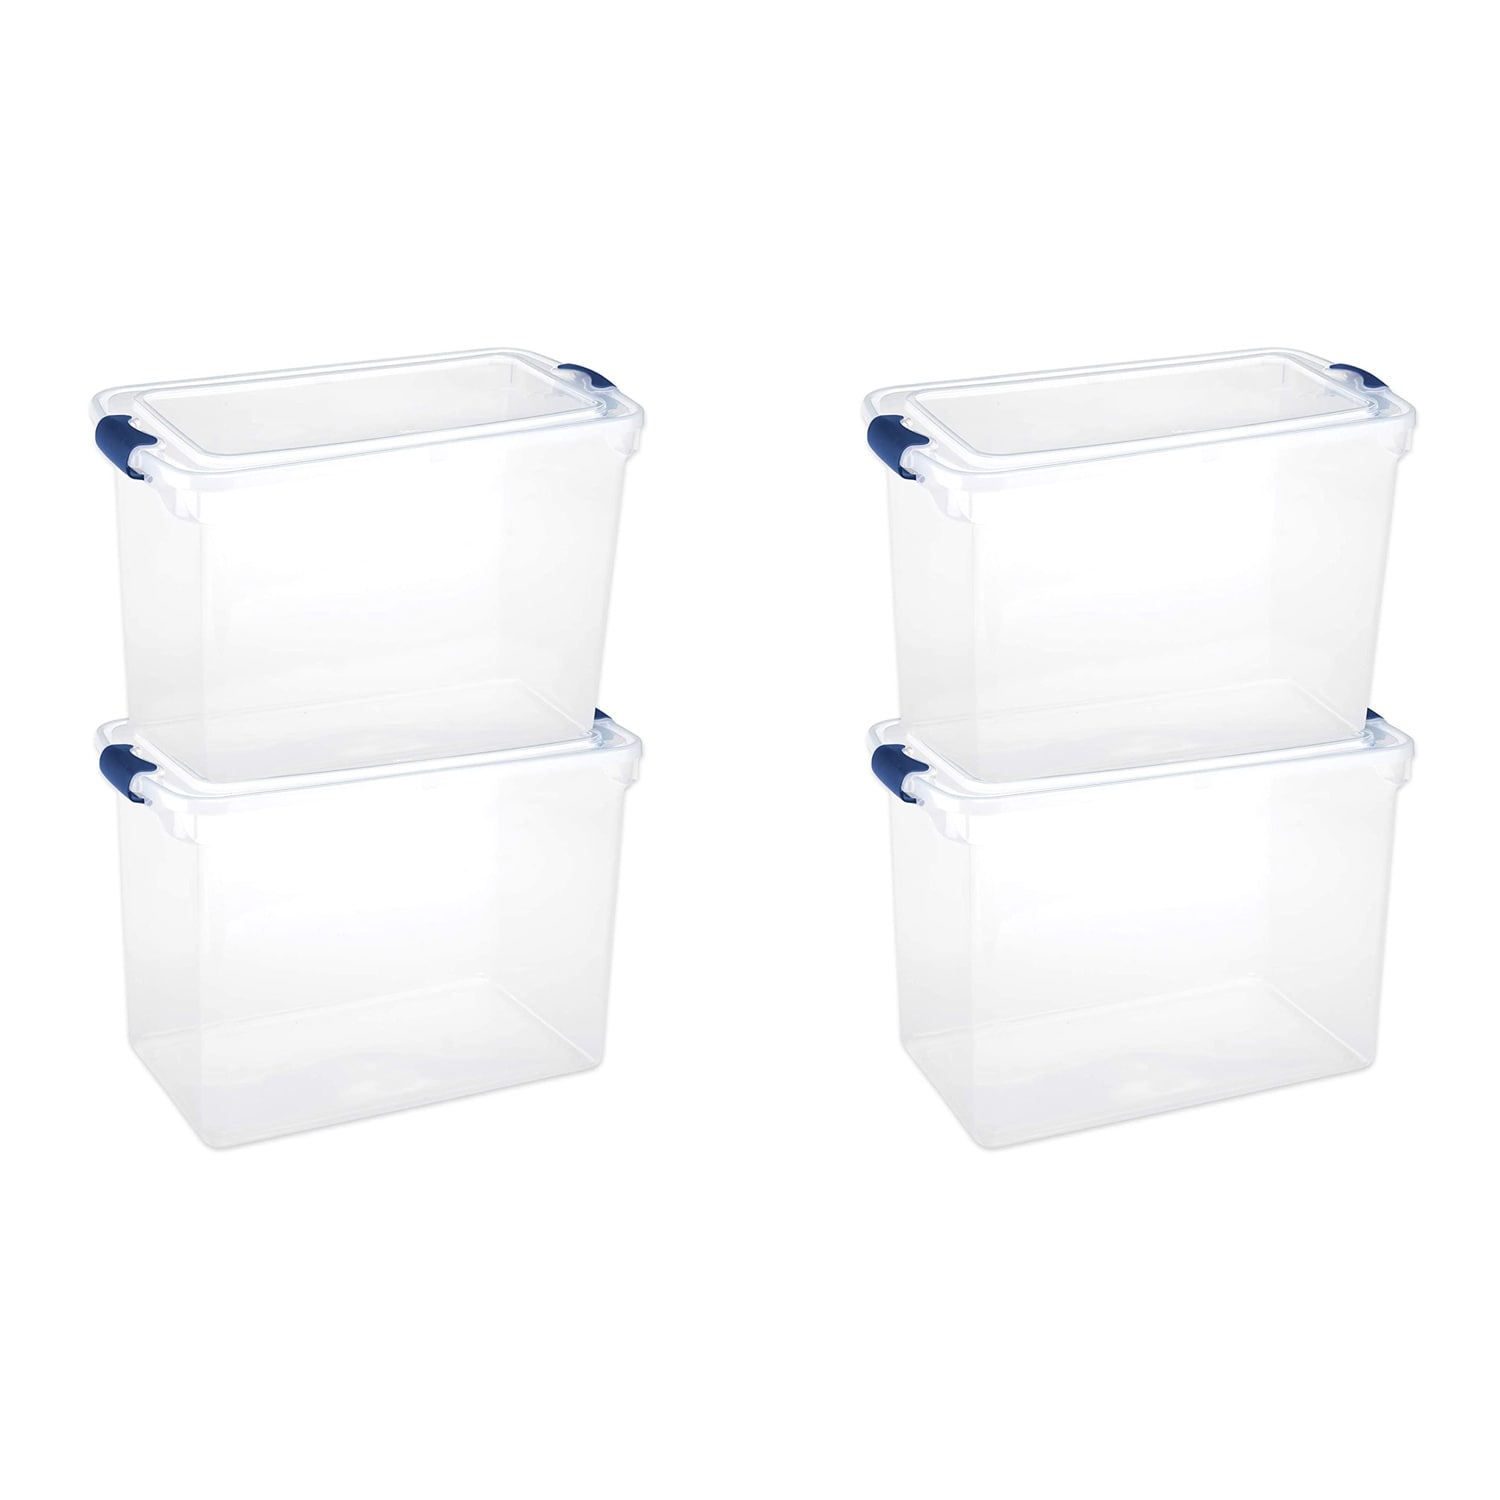  Homz 15-Quart Clear Plastic Stackable Storage